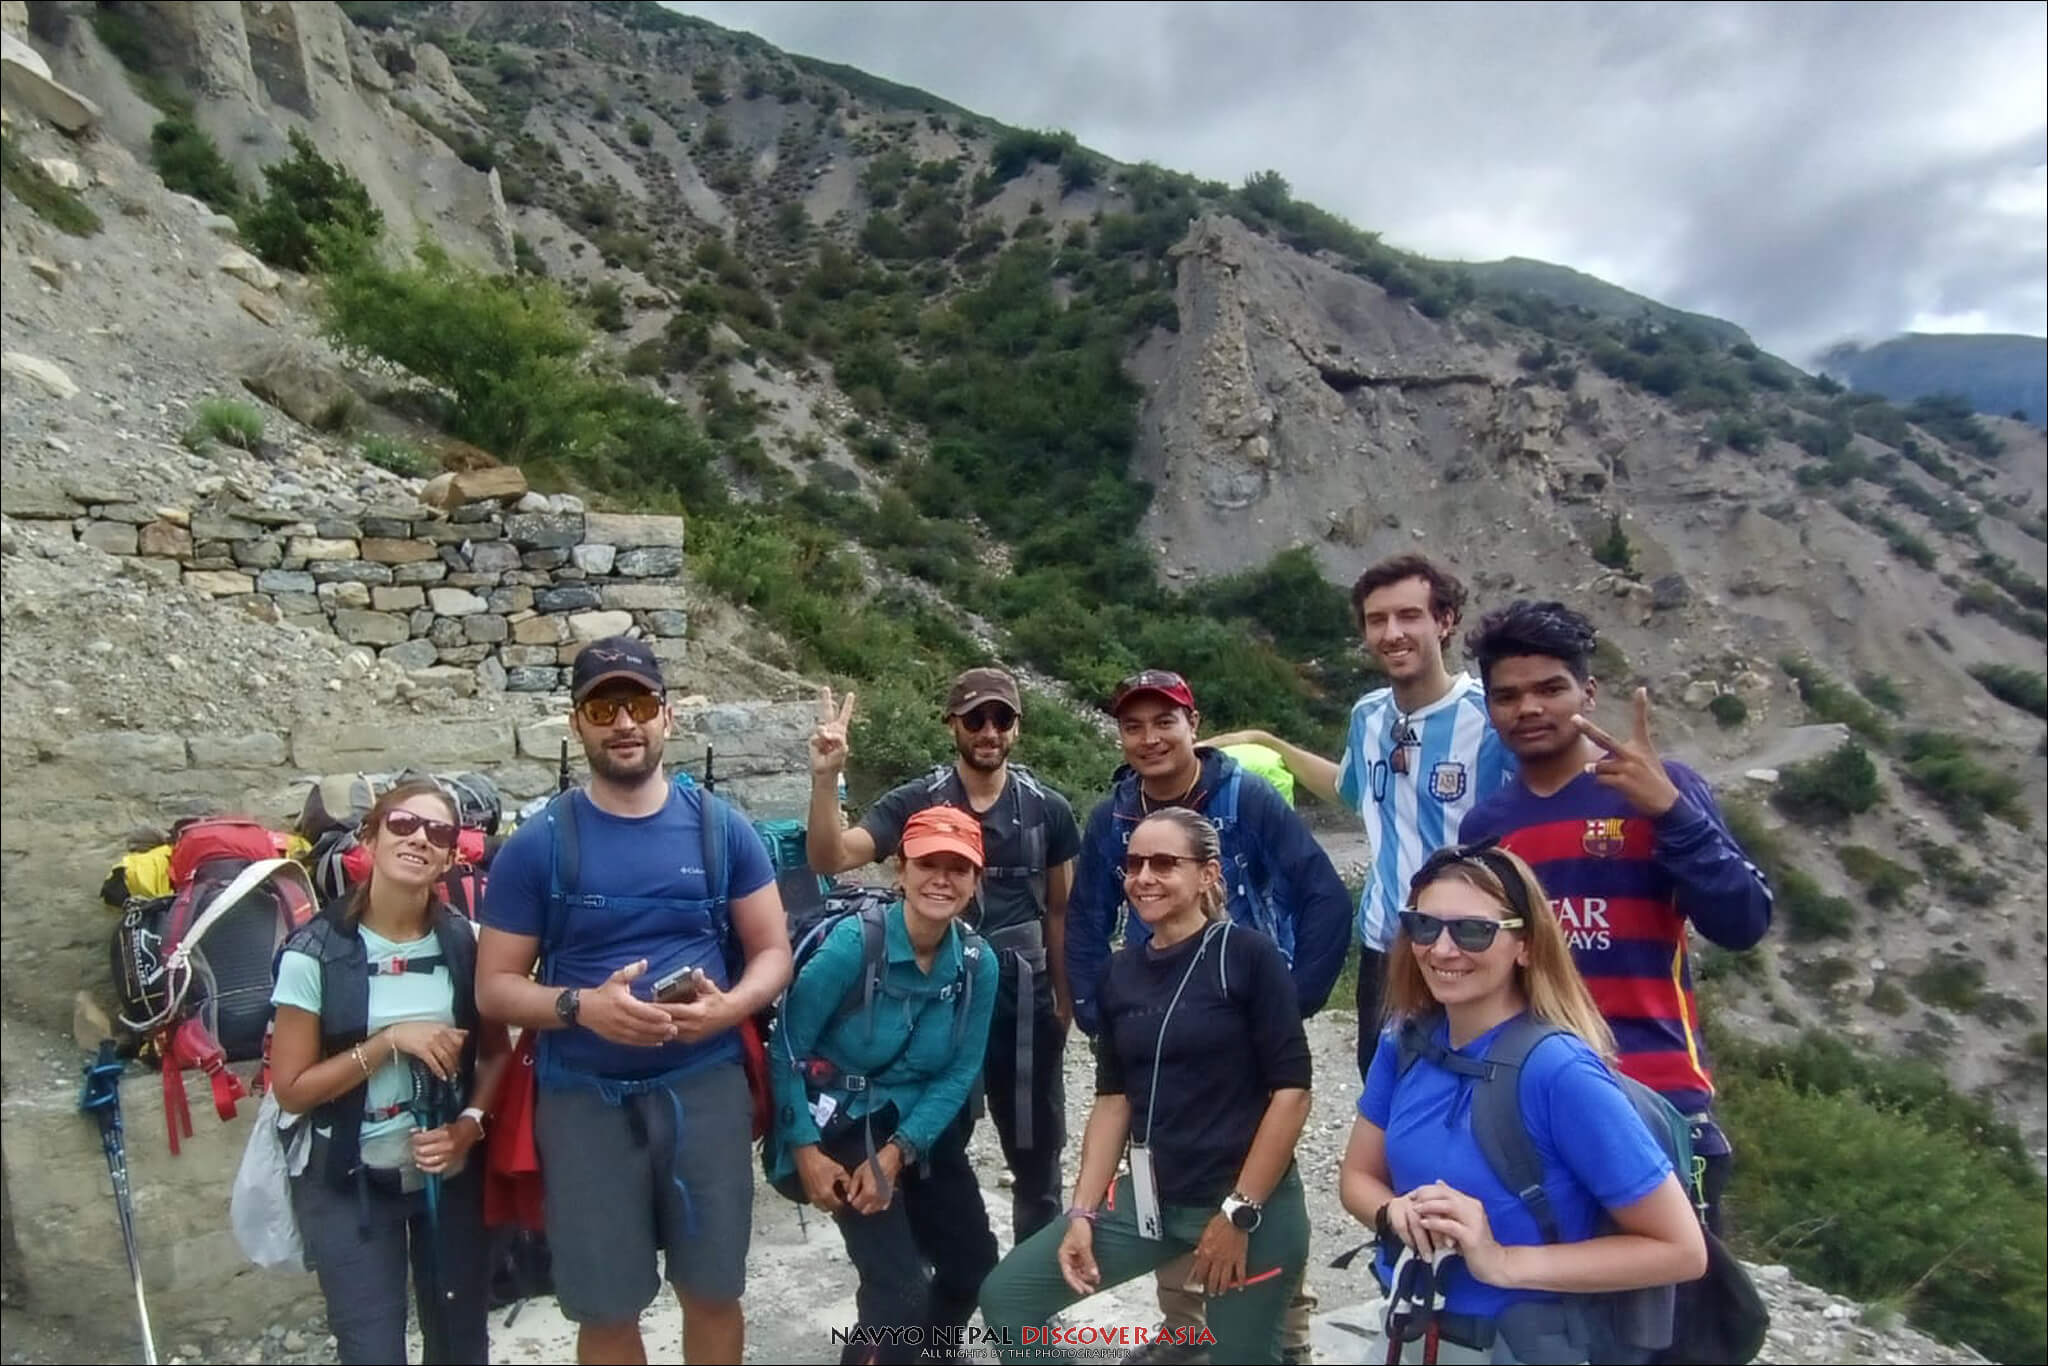 Guida al trekking Nepal: trekking d'estate, sulla via verso il lago Tilichio 4919 m nel mese di agosto